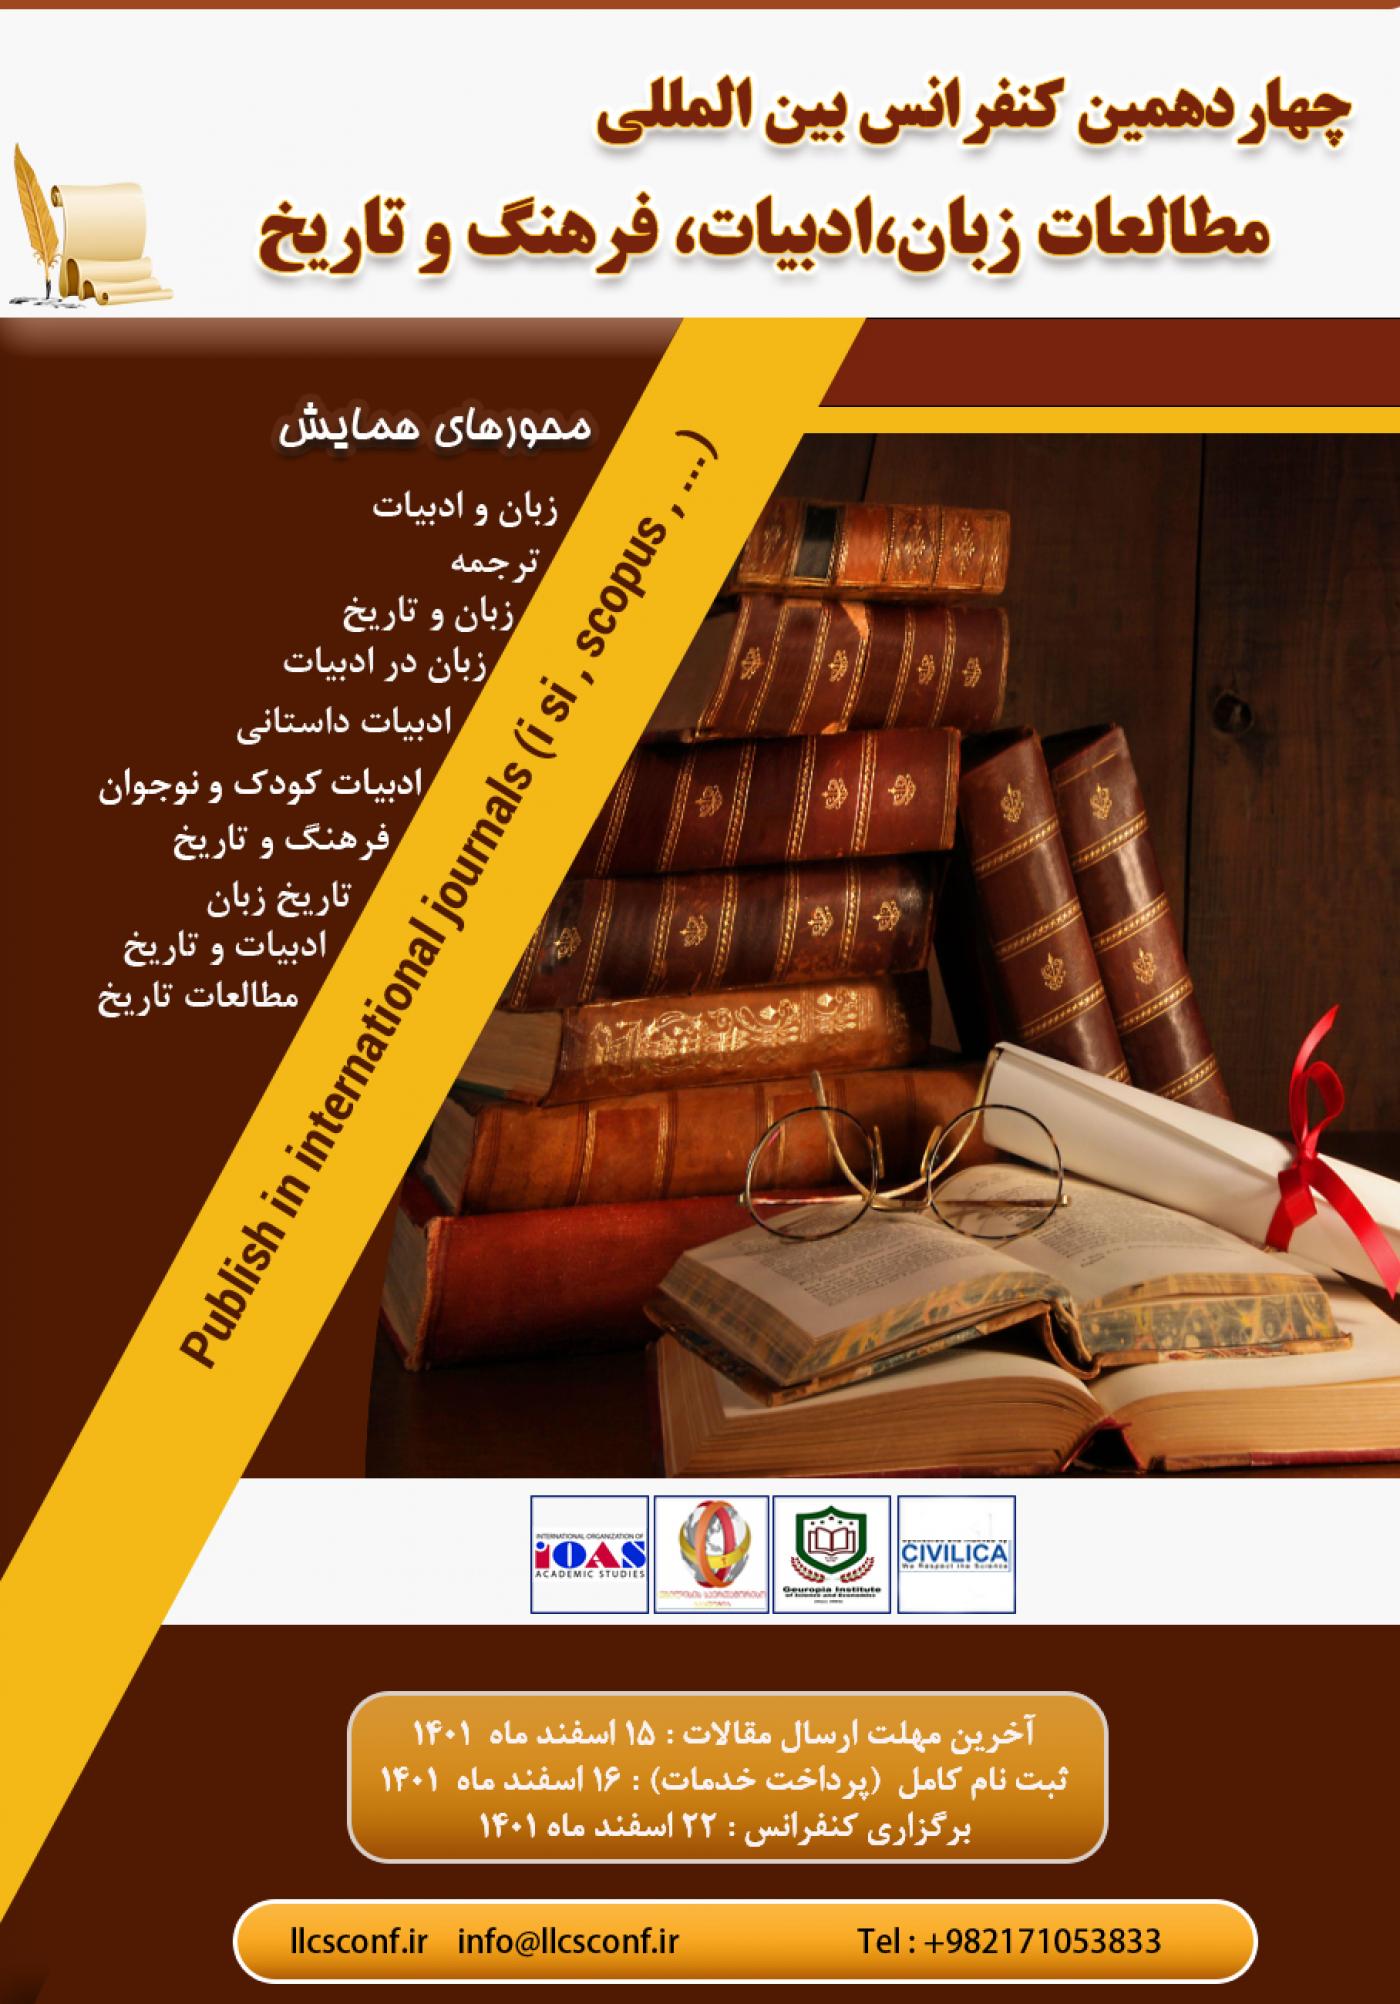 چهاردهمین کنفرانس بین المللی مطالعات زبان،ادبیات، فرهنگ و تاریخ -22 اسفند ماه 1401 در کشور گرجستان